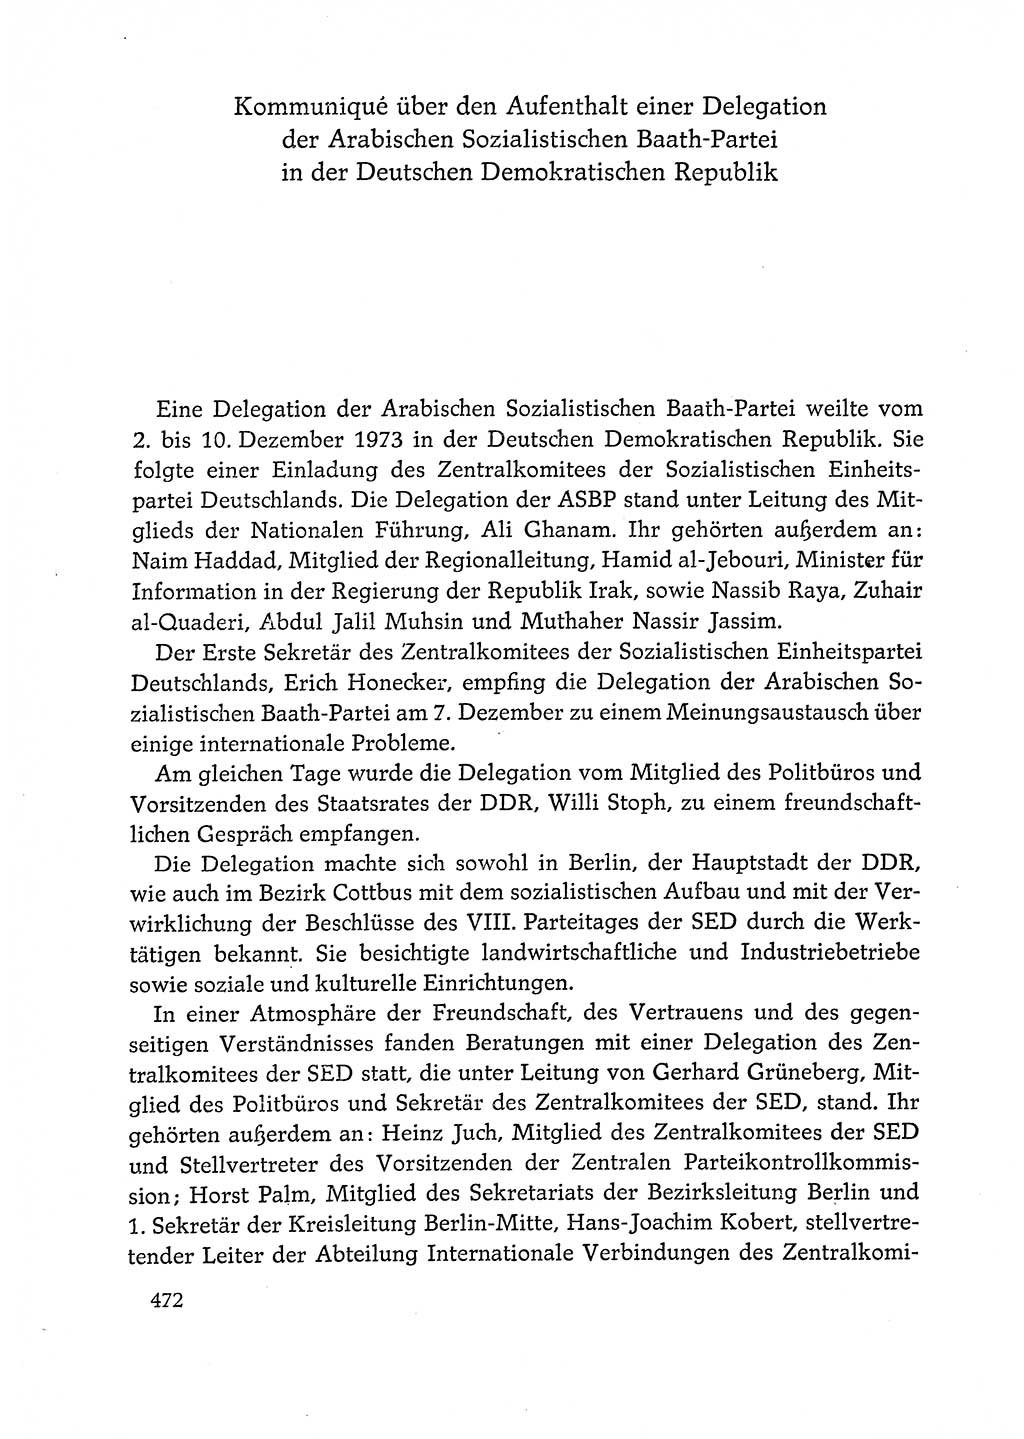 Dokumente der Sozialistischen Einheitspartei Deutschlands (SED) [Deutsche Demokratische Republik (DDR)] 1972-1973, Seite 472 (Dok. SED DDR 1972-1973, S. 472)